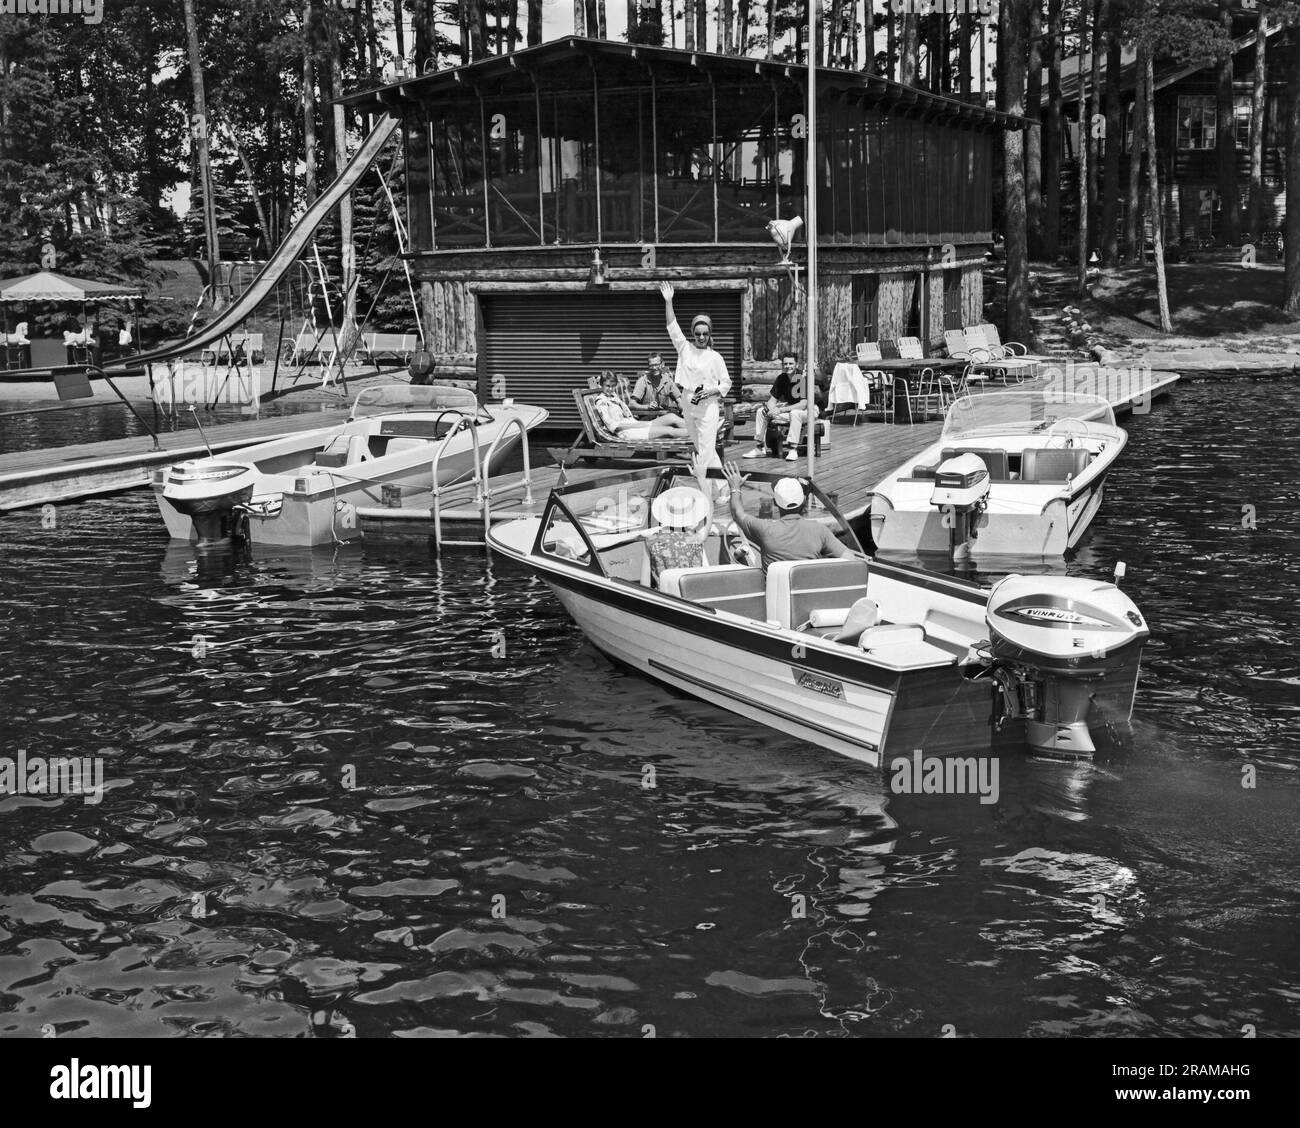 Vereinigte Staaten: c. 1960. Ein Paar kommt mit dem Motorboot an, um sich anderen auf dem Deck anzuschließen. Stockfoto